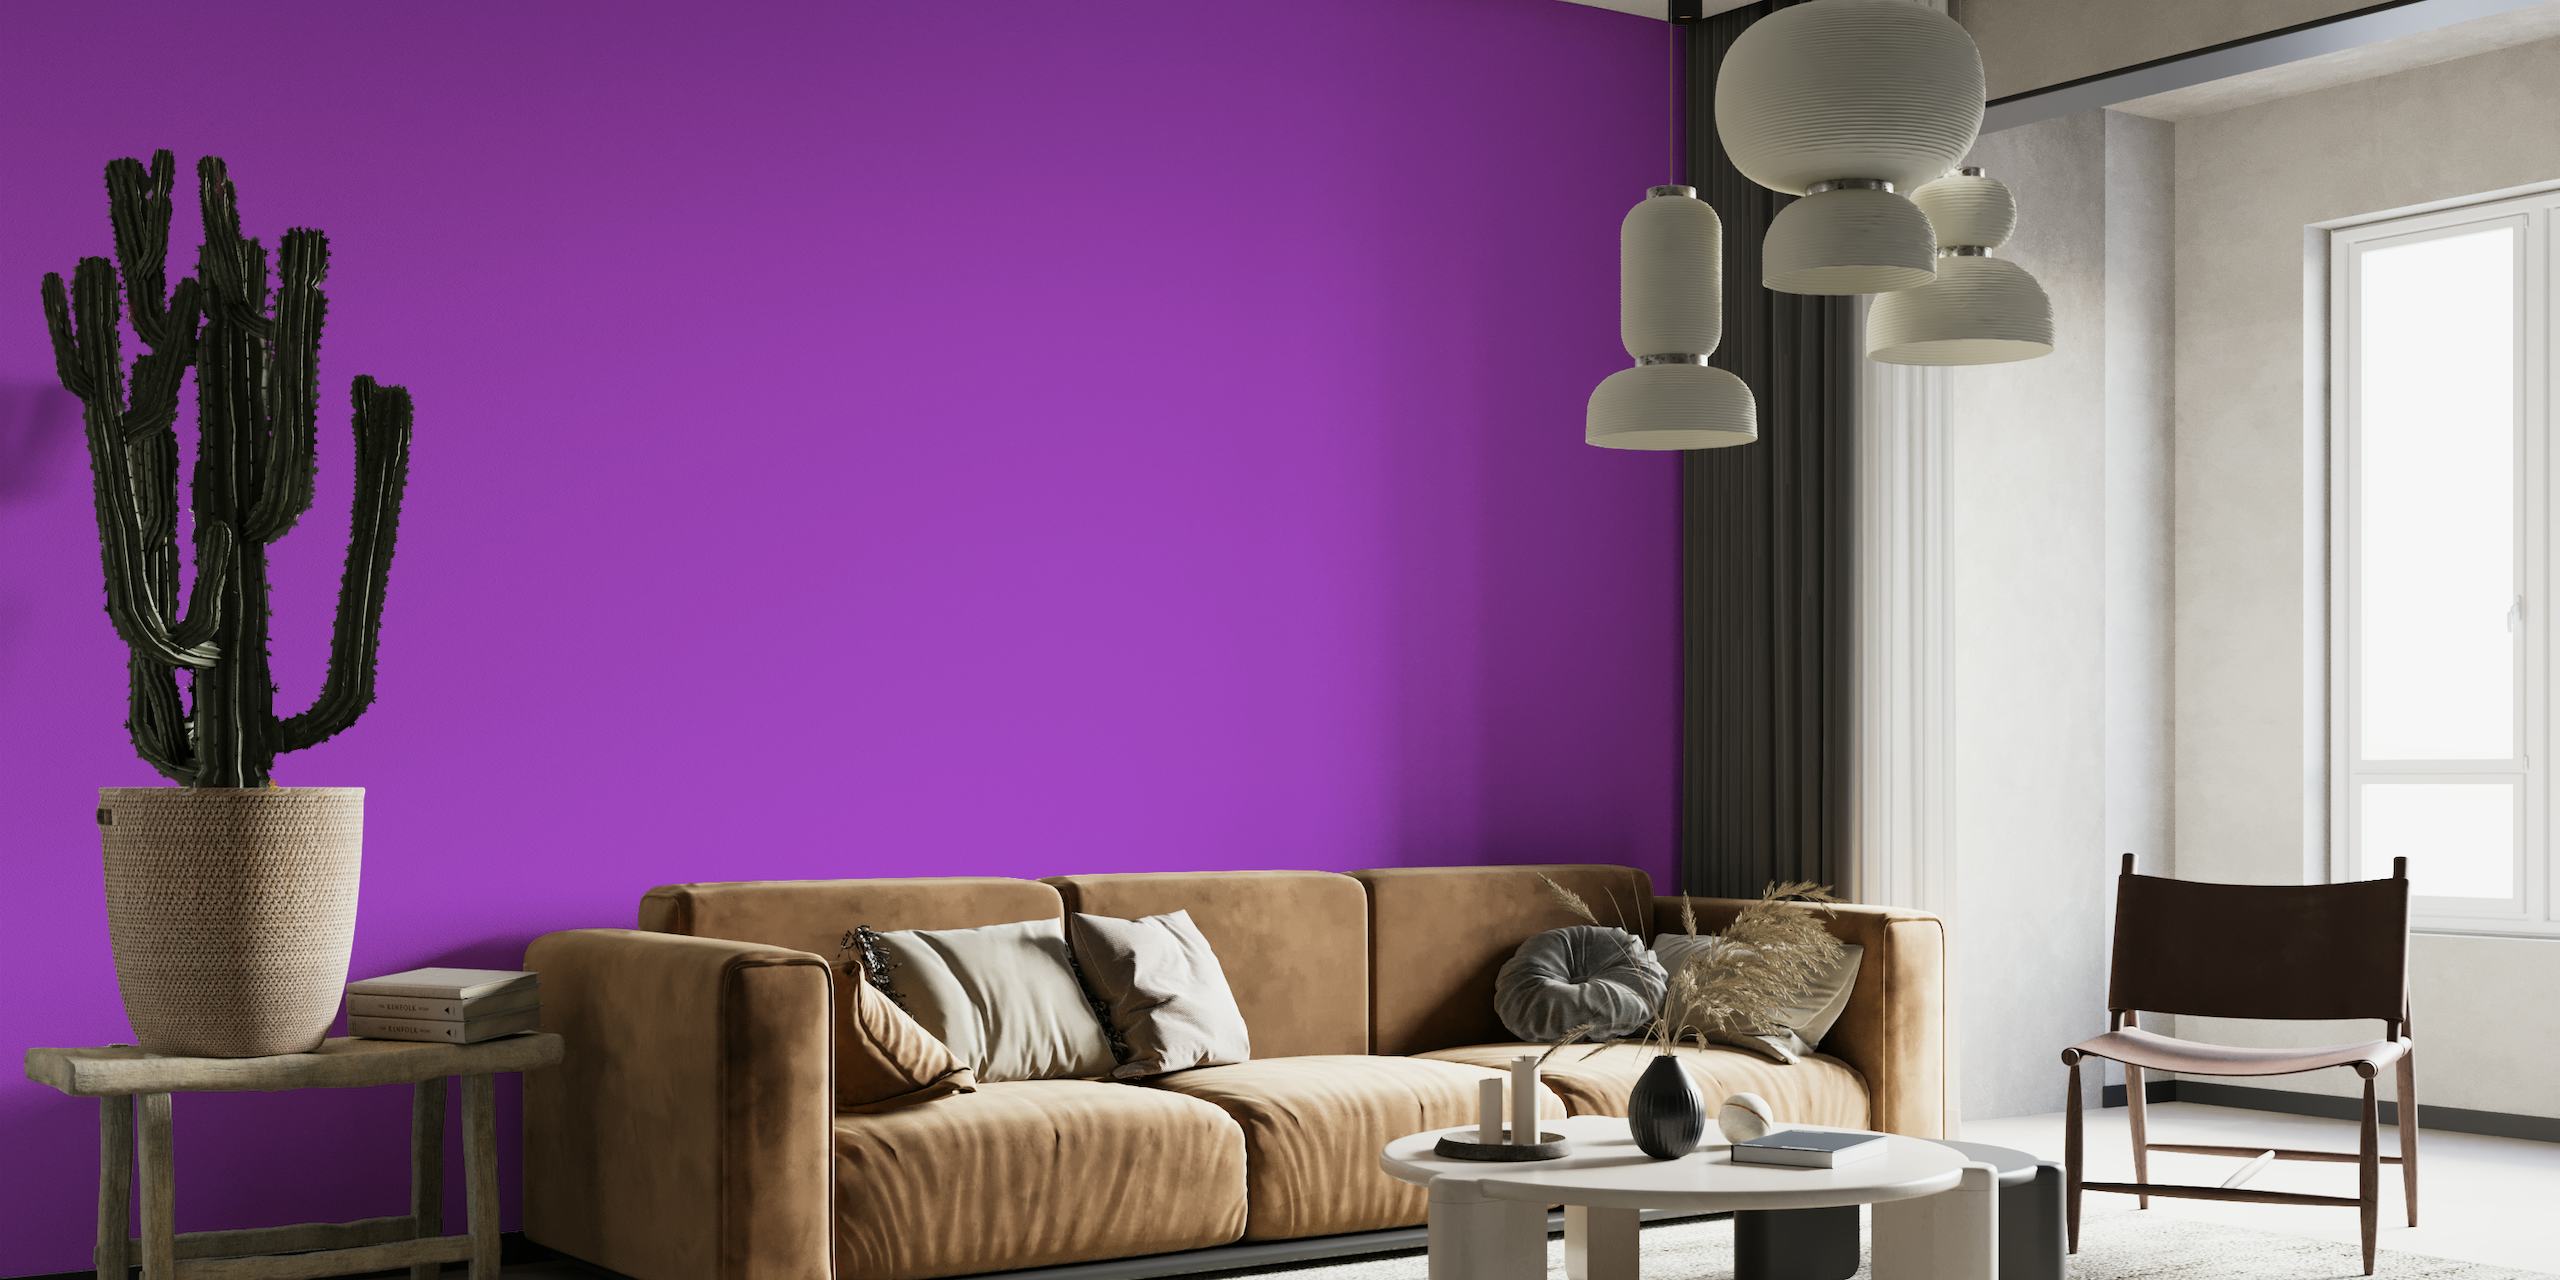 Candy Purple solid color wallpaper papel pintado